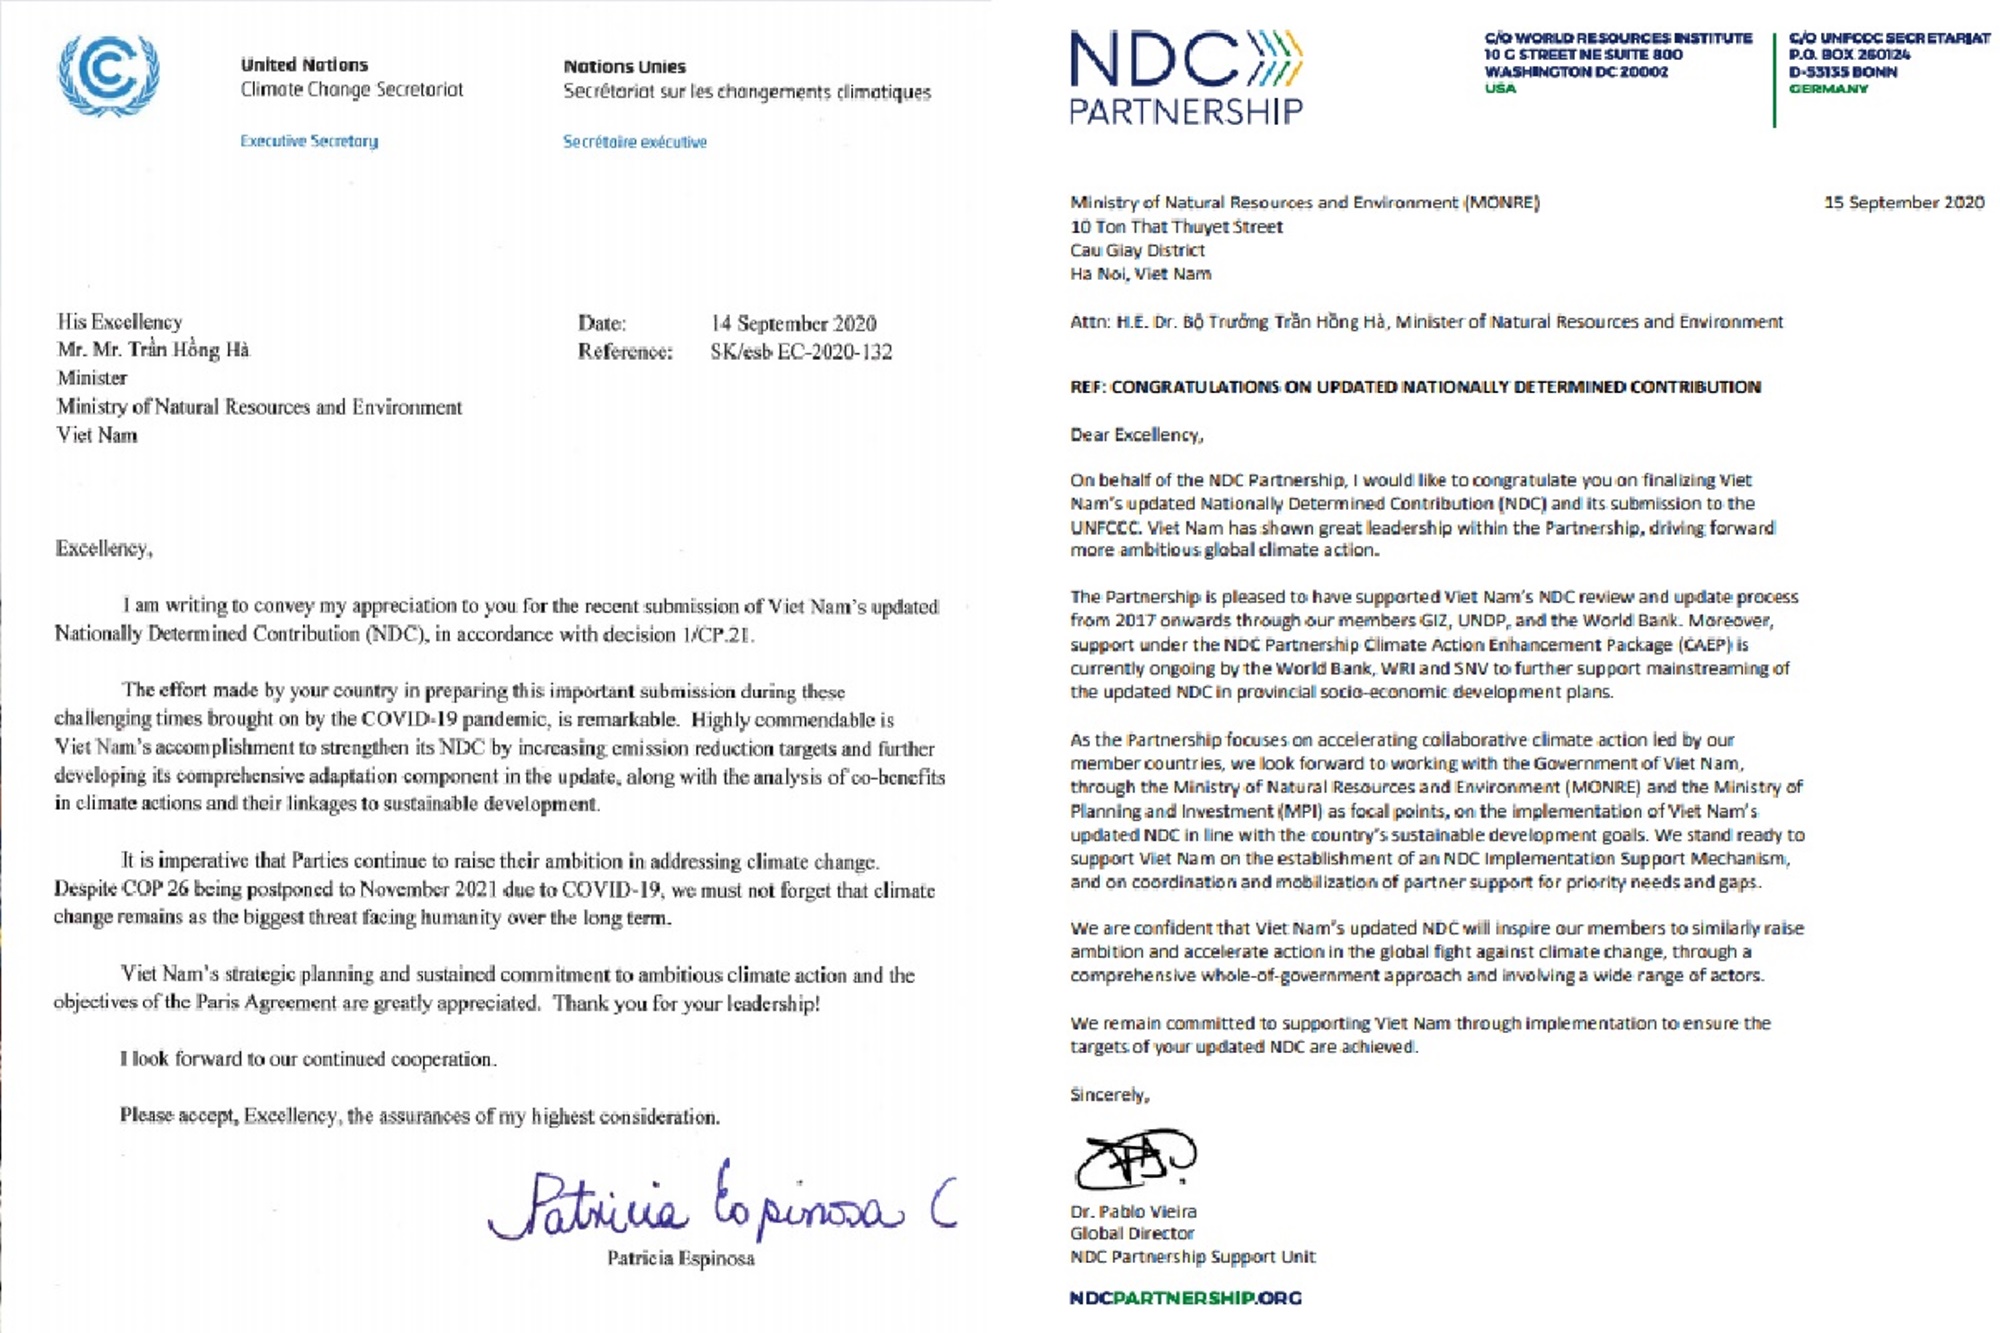 Cartas de Patricia Espinosa, secretaria ejecutiva de la CMNUCC y de Pablo Vieira, director de NDC Partnership al Ministro de Recursos Naturales y Medio Ambiente. (Fuente: Departamento de Cambio Climático)